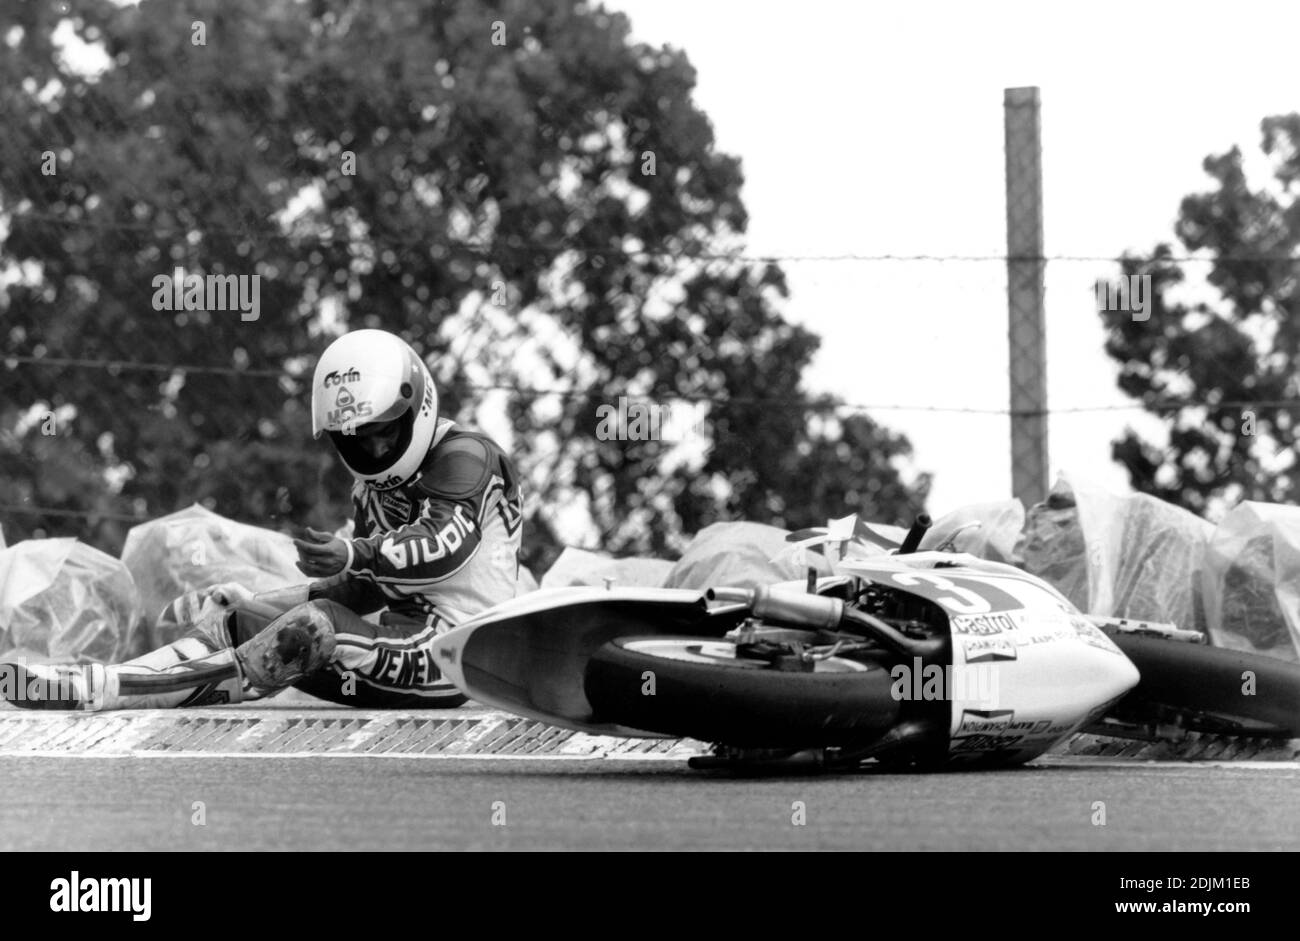 Carlos Lavado, Yamaha 250, Spanien Moto gp 1985 , Jarama Stockfoto